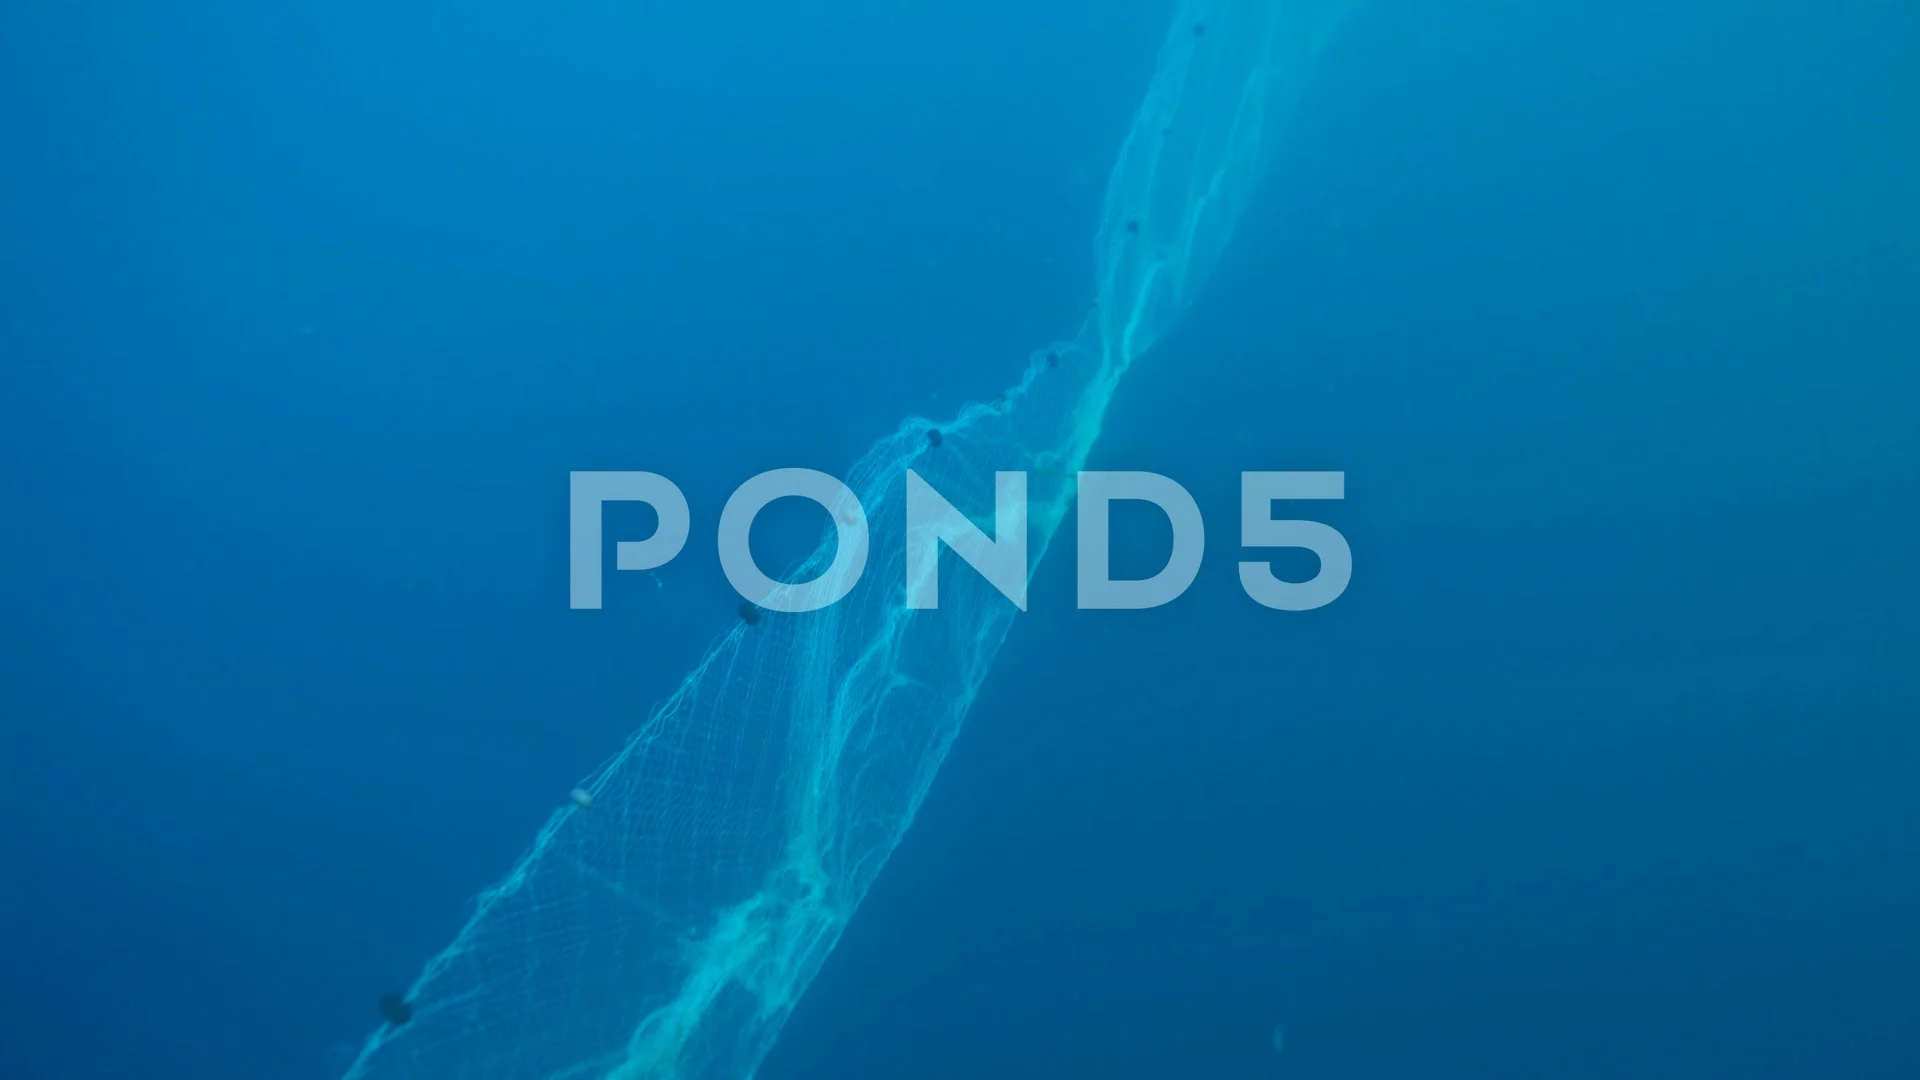 https://images.pond5.com/long-fishing-net-under-sea-144678947_prevstill.jpeg